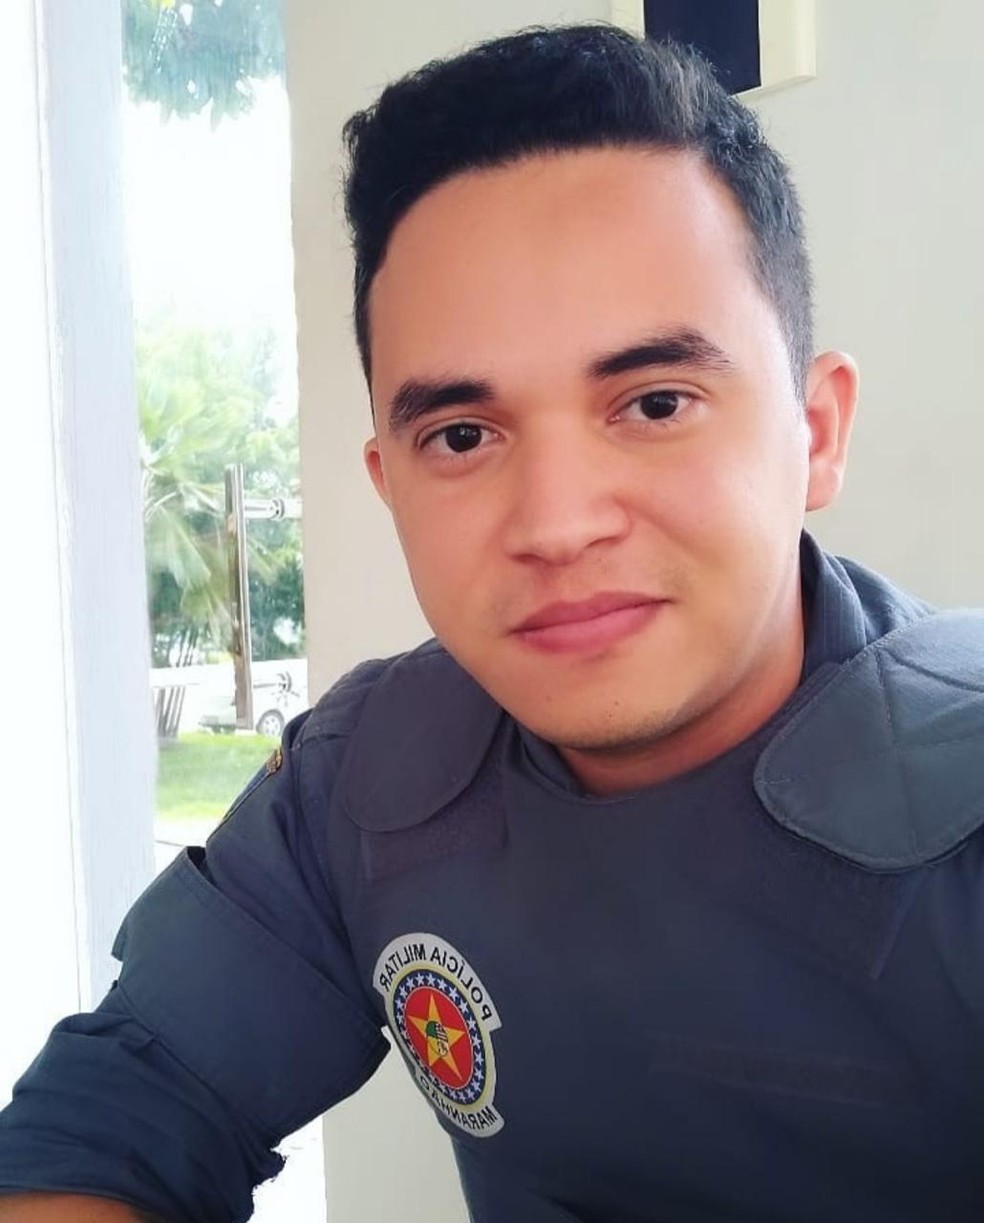 Adonias Sadda, soldado da Polícia Militar, é o principal suspeito de ter efetuado o disparo contra o médico. — Foto: Divulgação/Arquivo pessoal